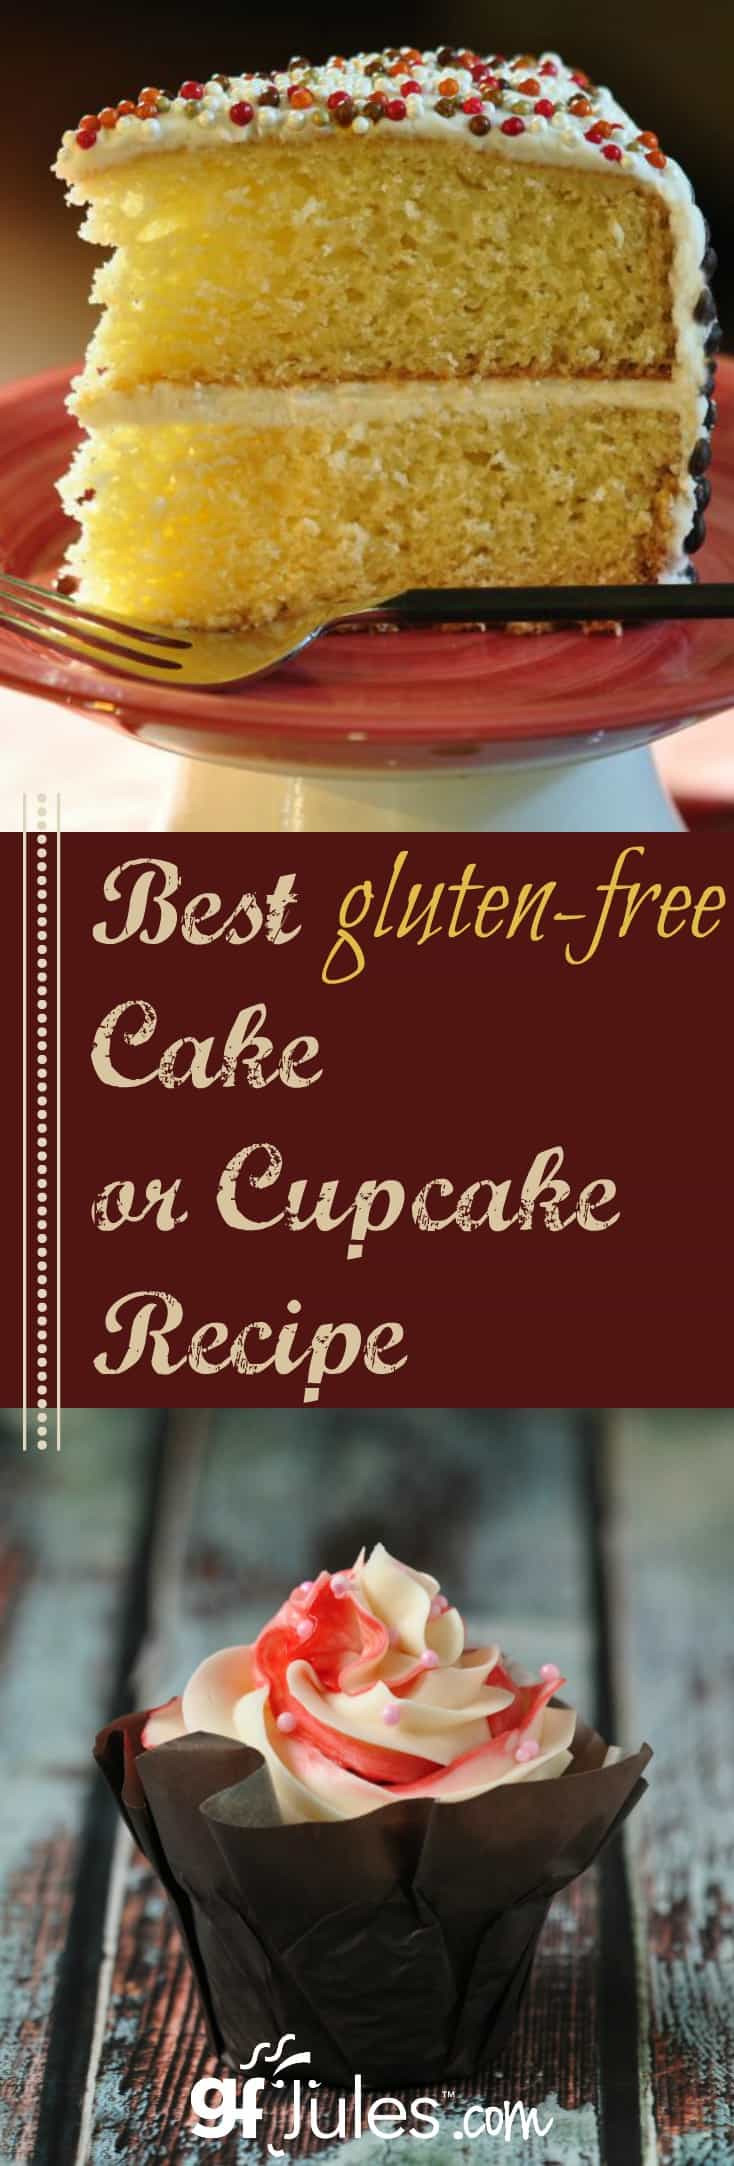 Best Dairy Free Recipes
 Best Gluten Free Cake Recipe gfJules